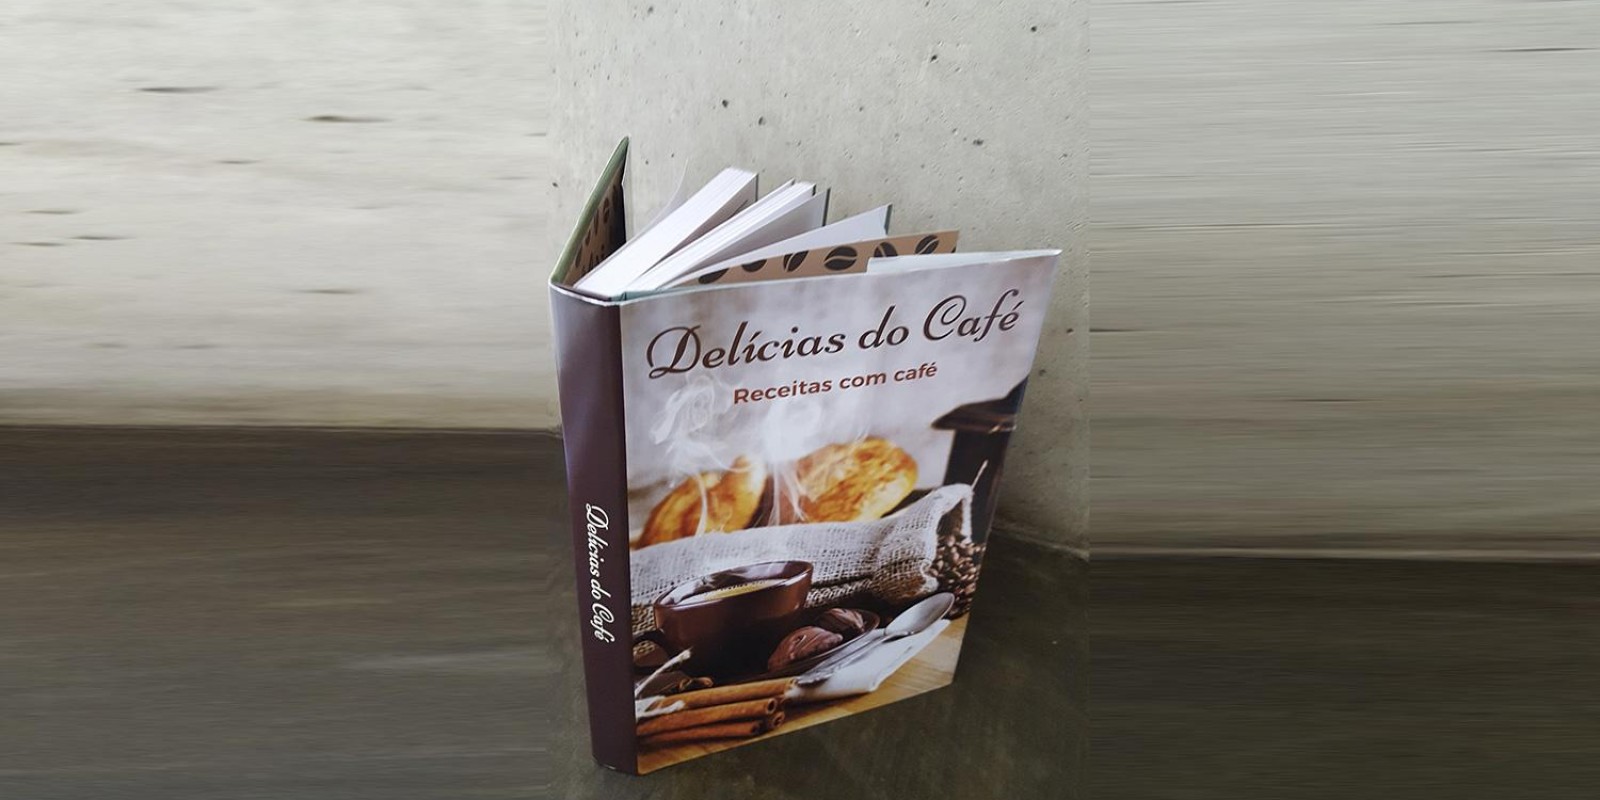 Emater-MG lança coletânea de receitas “Delícias do Café”, no Espaço Mineiraria, do Mercado Central de Belo Horizonte 